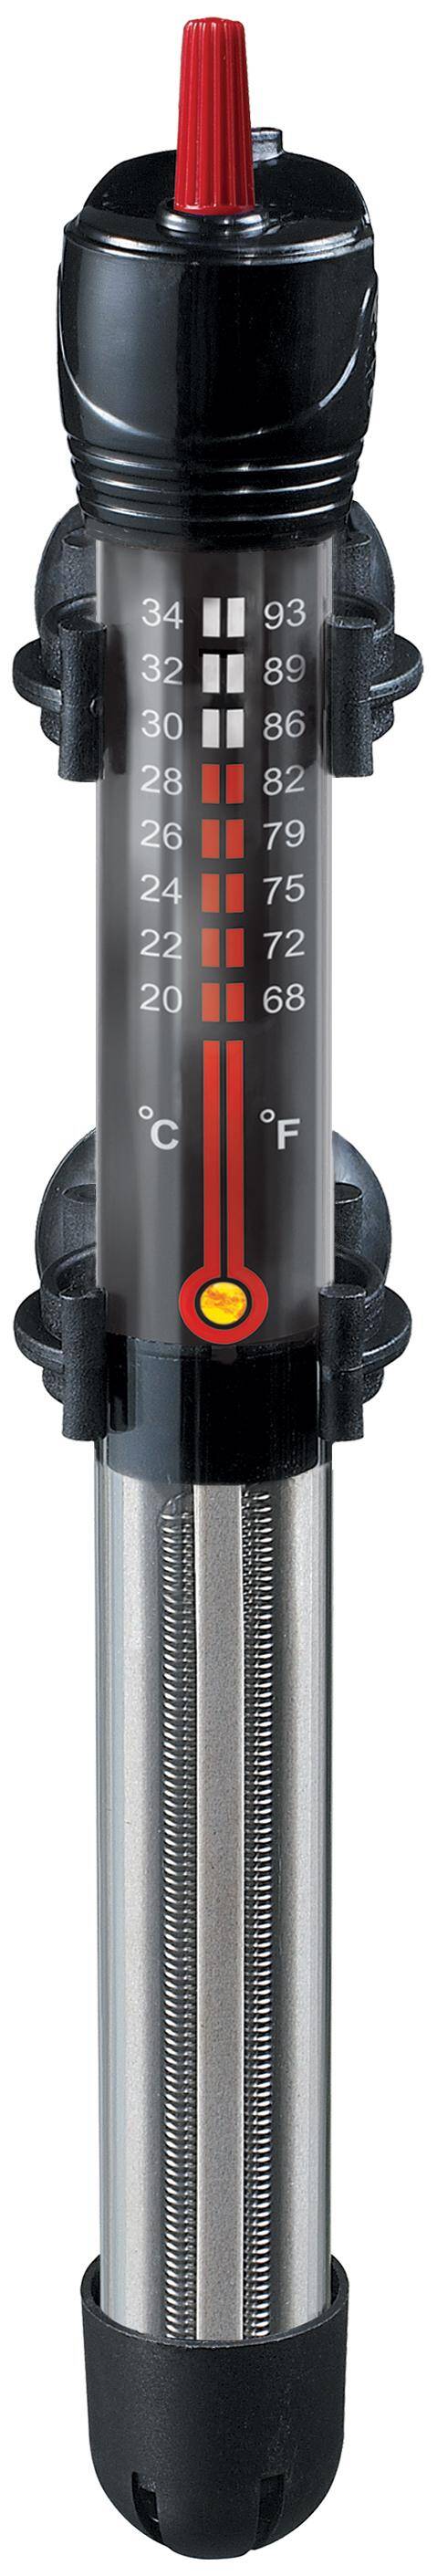 AquaT 75W Heizgerät mit Thermostat Happet (S-G075XI)